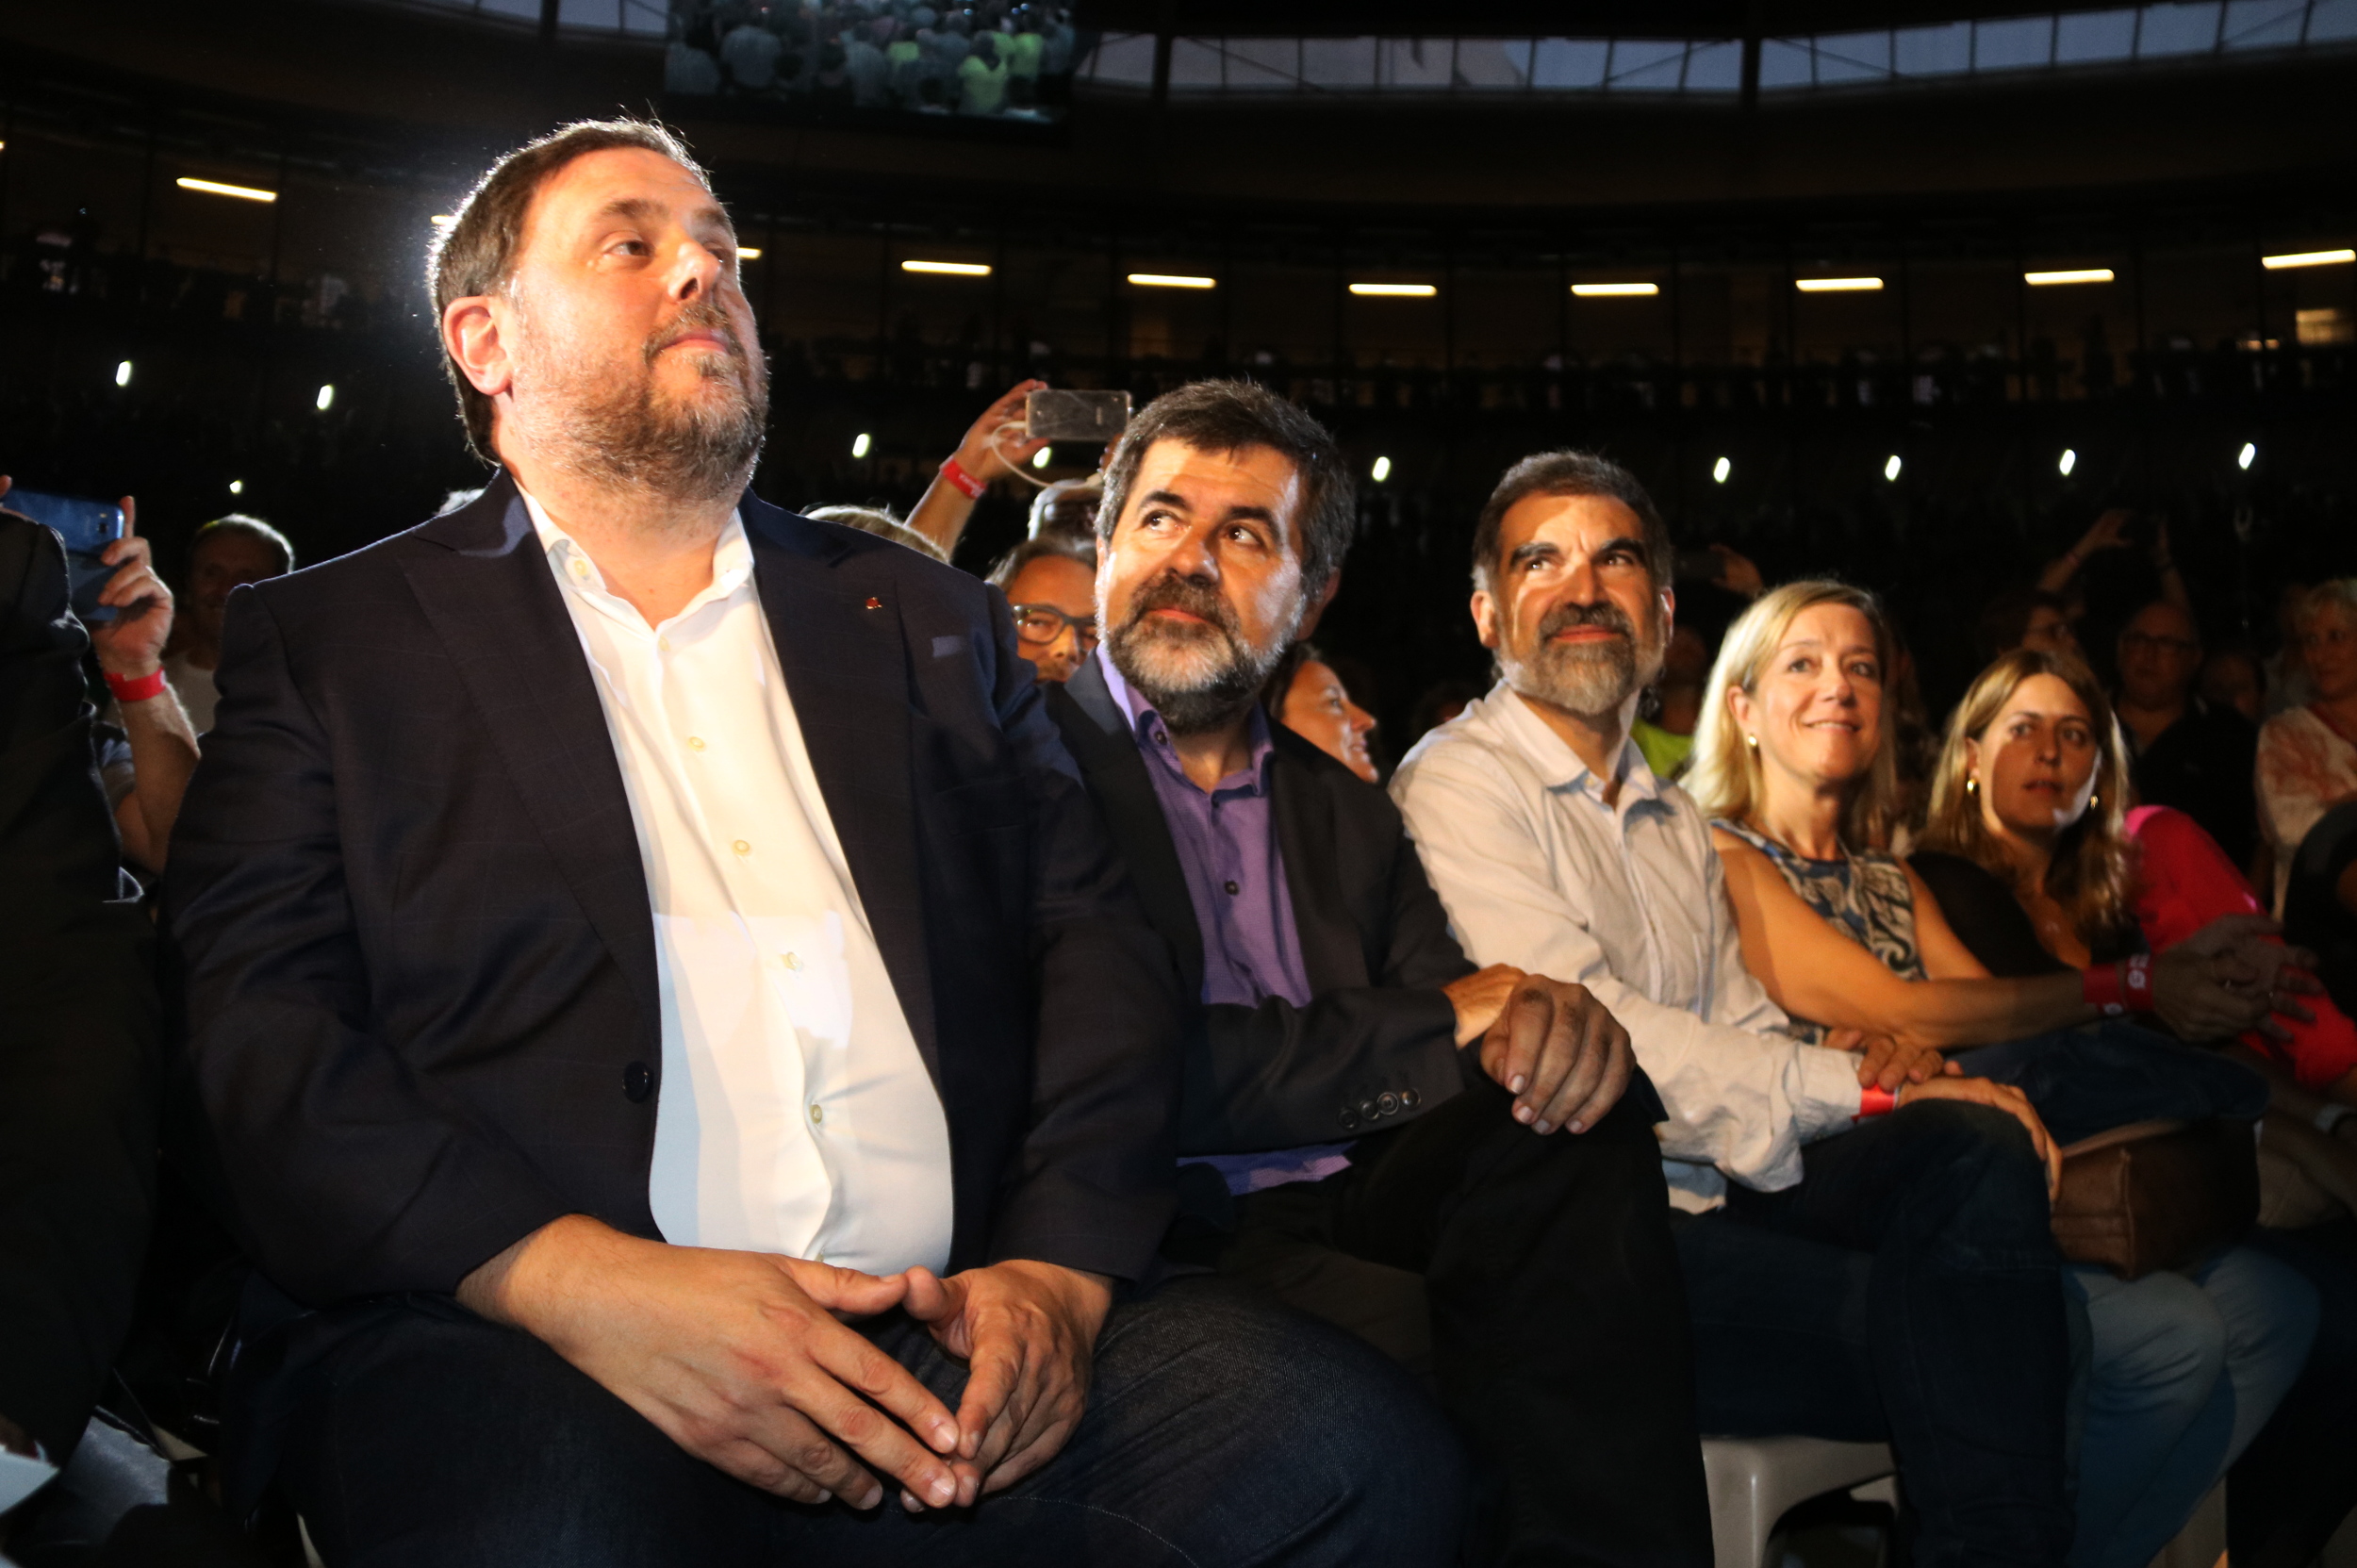 Oriol Junqueras (left), Jordi Sànchez (center) and Jordi Cuixart (right) at an event in favor of the independence referendum on September 14, 2017 (Sílvia Jardí/ACN)